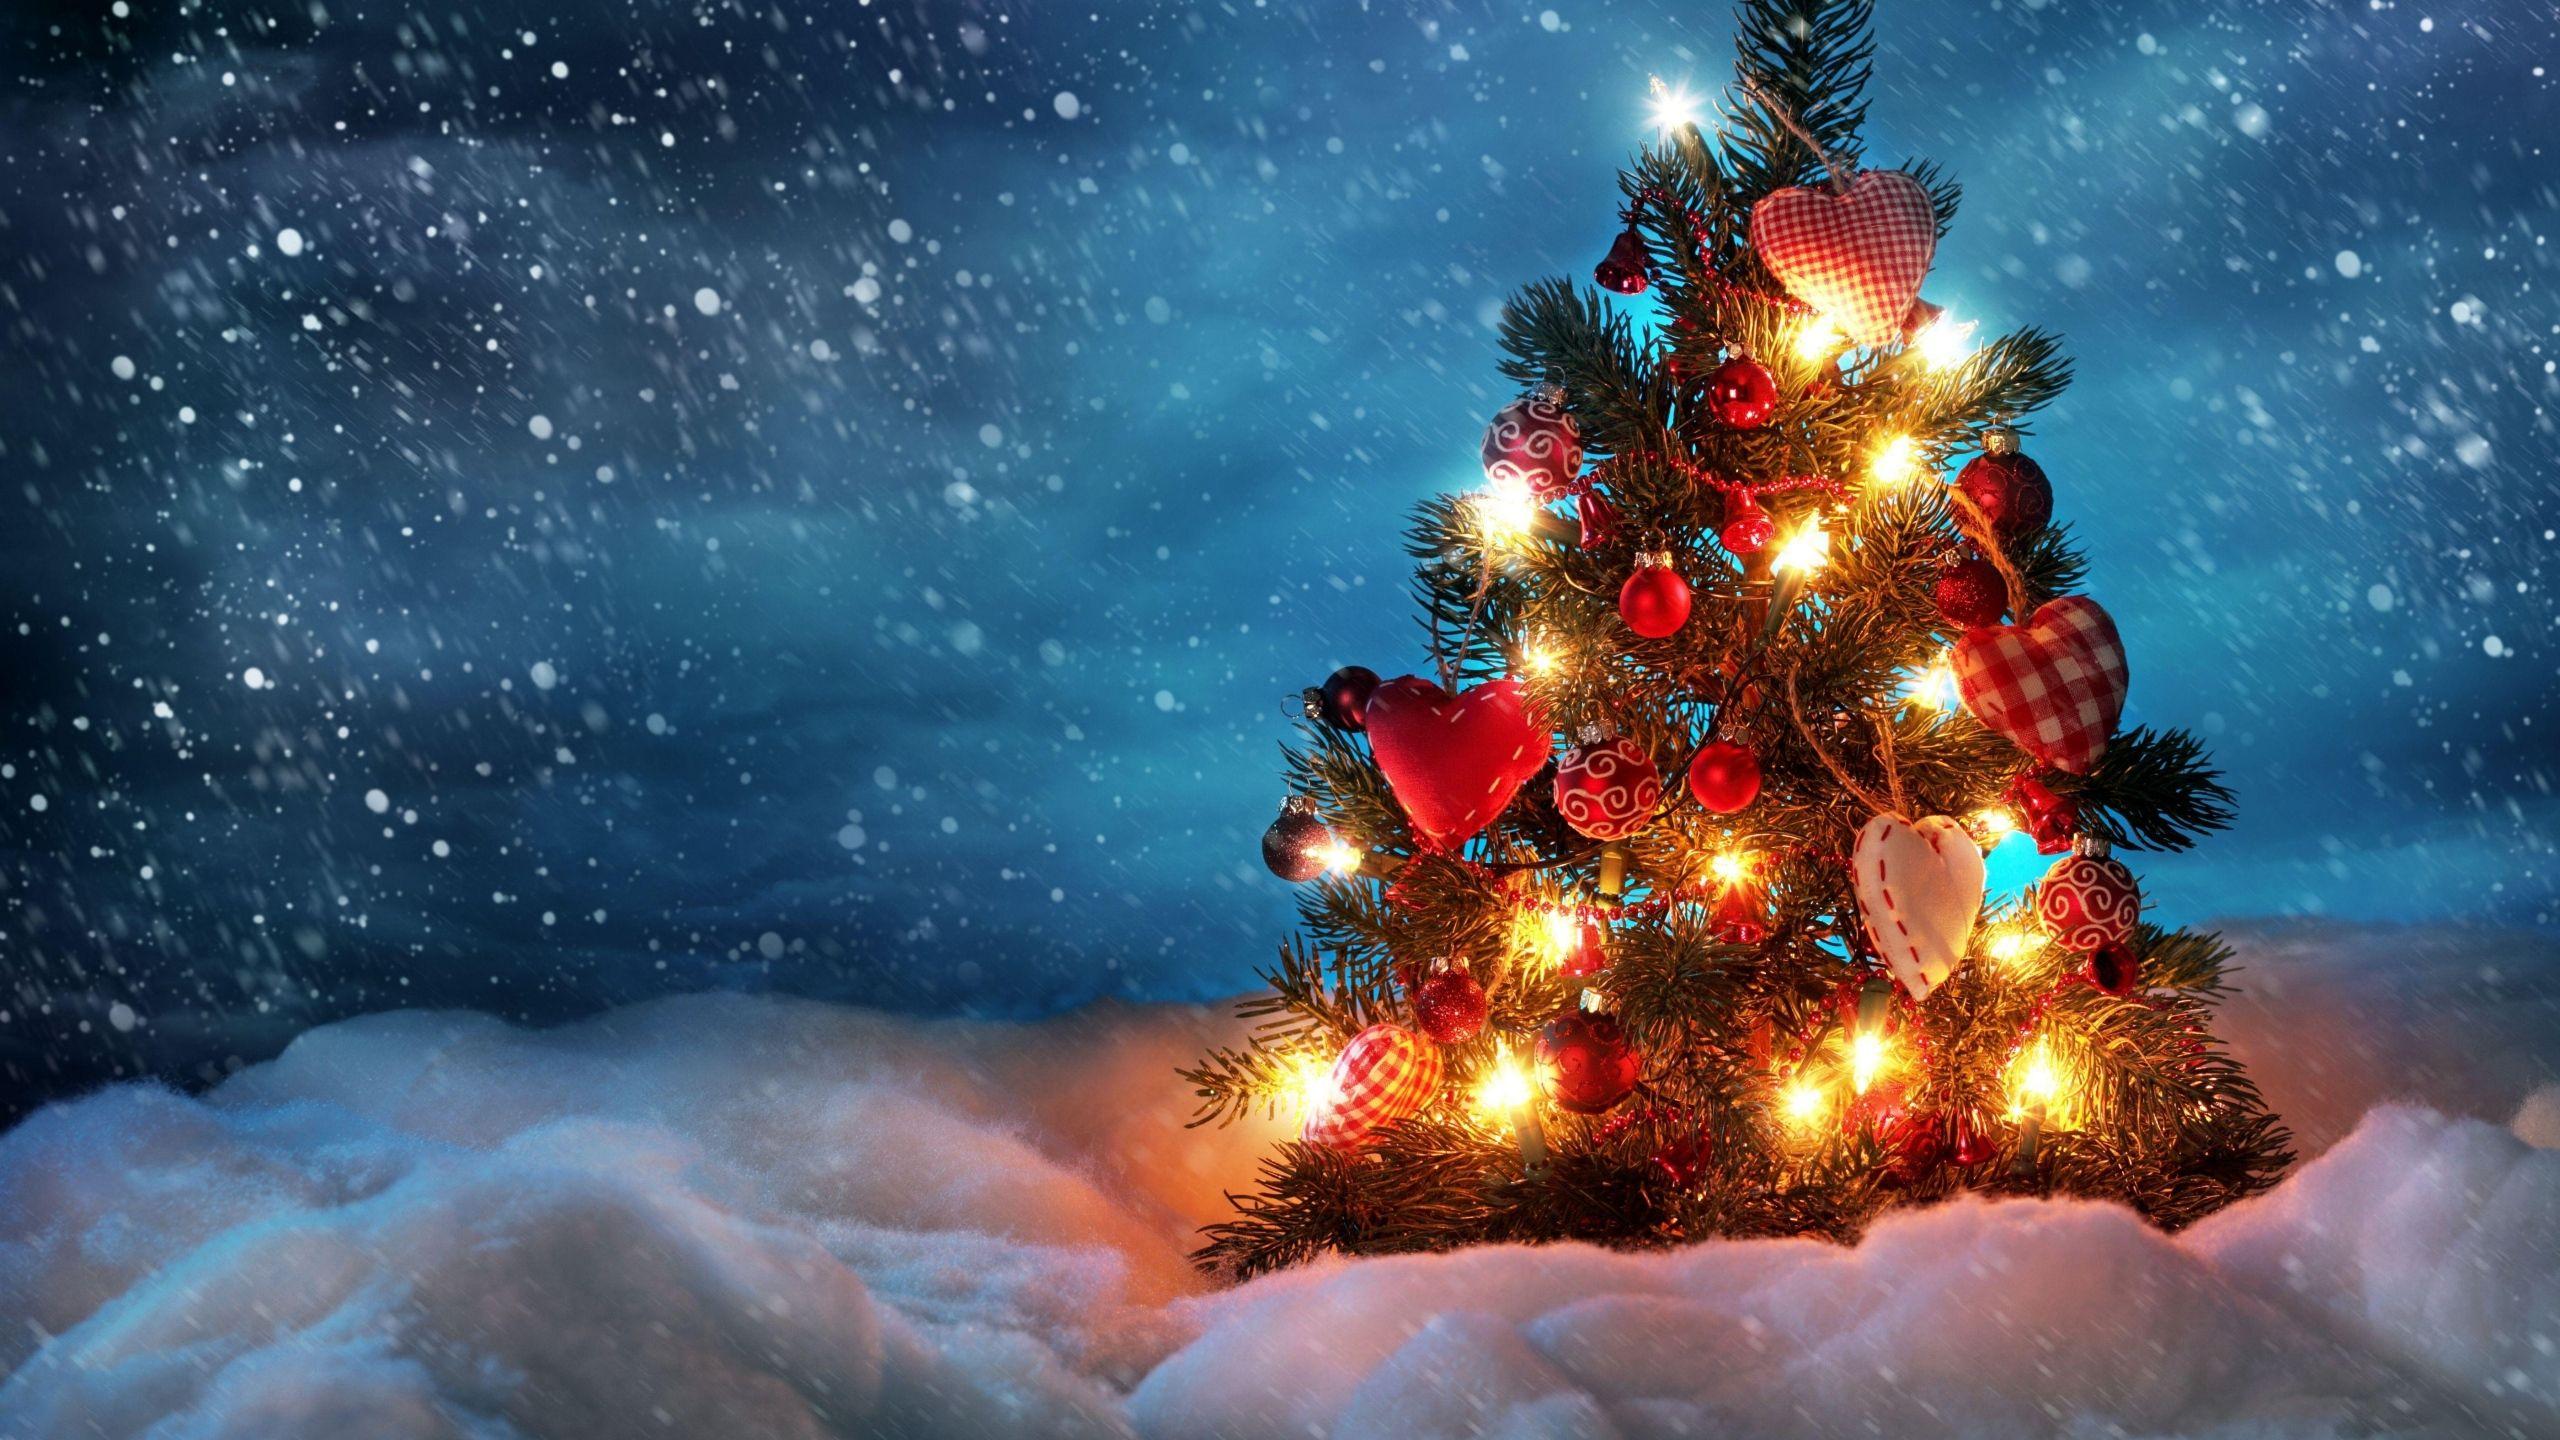 Hình nền Giáng sinh 4K là chiếc chìa khóa mở ra một thế giới đầy màu sắc và huyền ảo. Nó sẽ đưa bạn đến những không gian lạ mắt nhưng lại đầy cảm xúc. Hãy tìm kiếm và lựa chọn những bức hình nền đẹp nhất, để tạo cho màn hình của bạn một không gian thật lung linh, tràn đầy niềm vui và ấm áp trong mùa lễ Giáng Sinh.